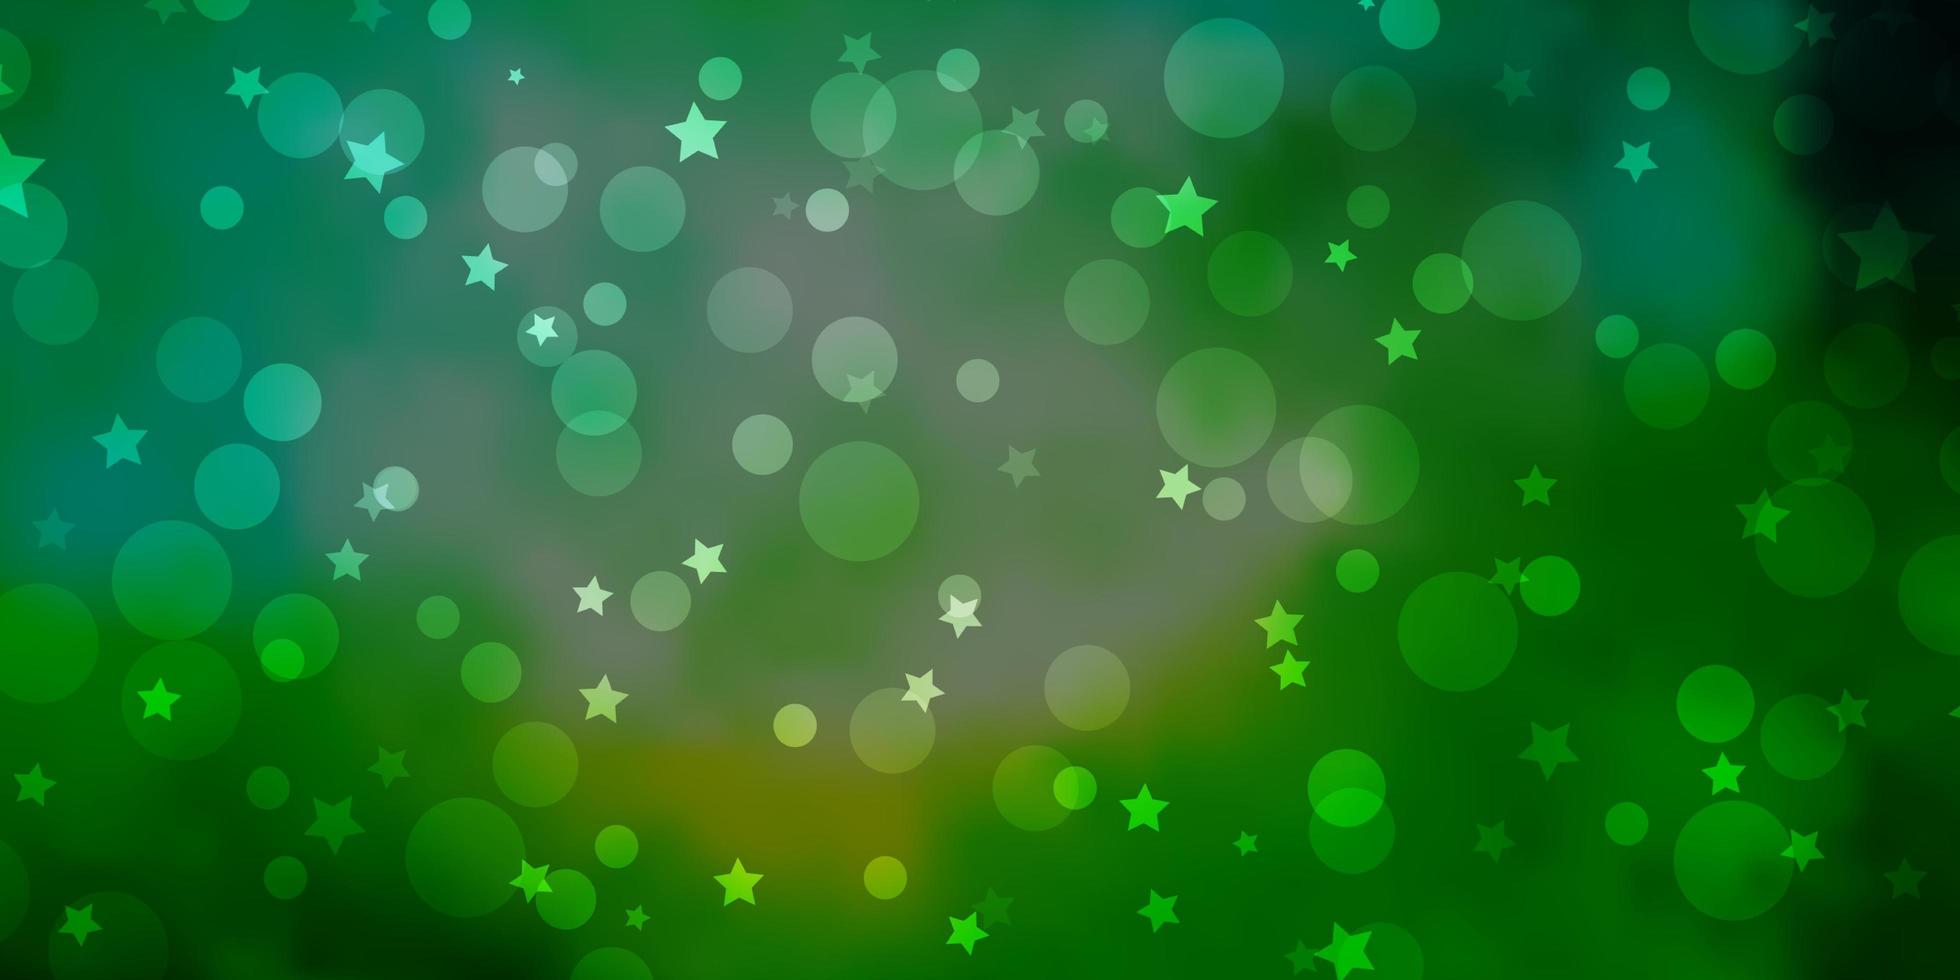 licht blauw groene vector achtergrond met cirkels sterren abstract ontwerp in gradiënt stijl met bubbels sterren textuur voor jaloezieën gordijnen